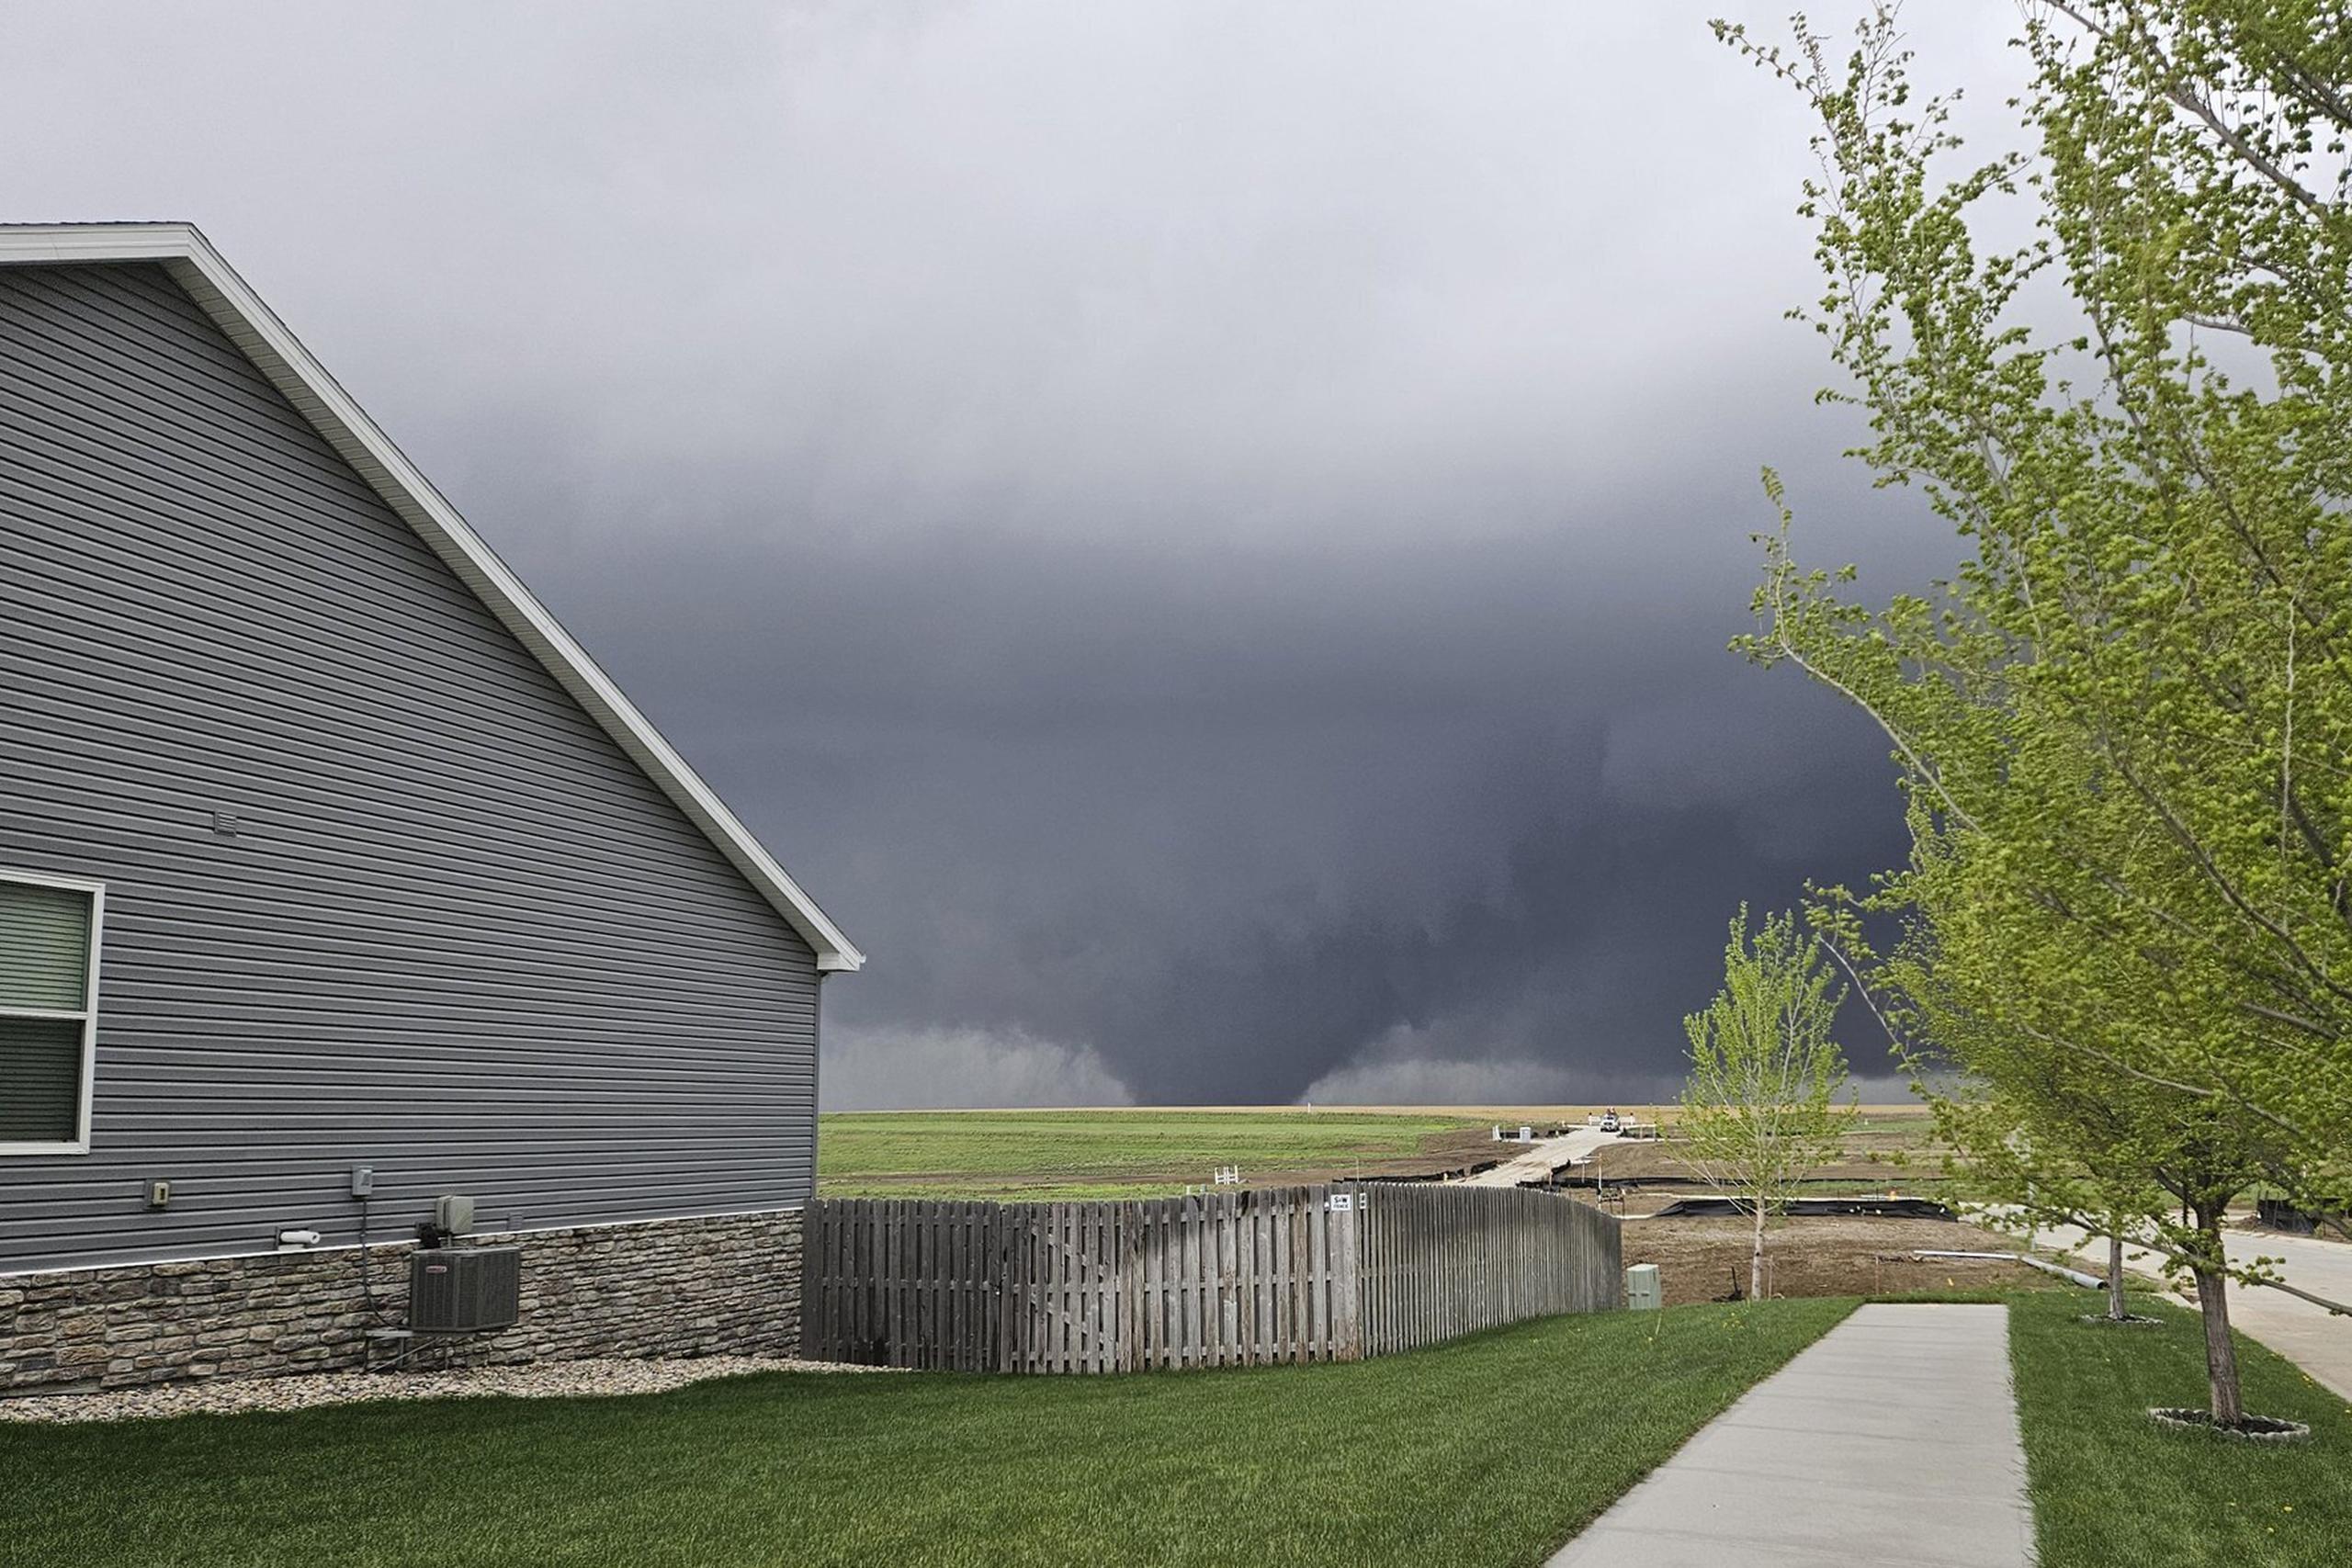 En Nebraska se registraron varios tornados, pero la tormenta más destructiva se desplazó desde una zona mayoritariamente rural hacia los suburbios al noroeste de Omaha, una ciudad de 485,000 habitantes.